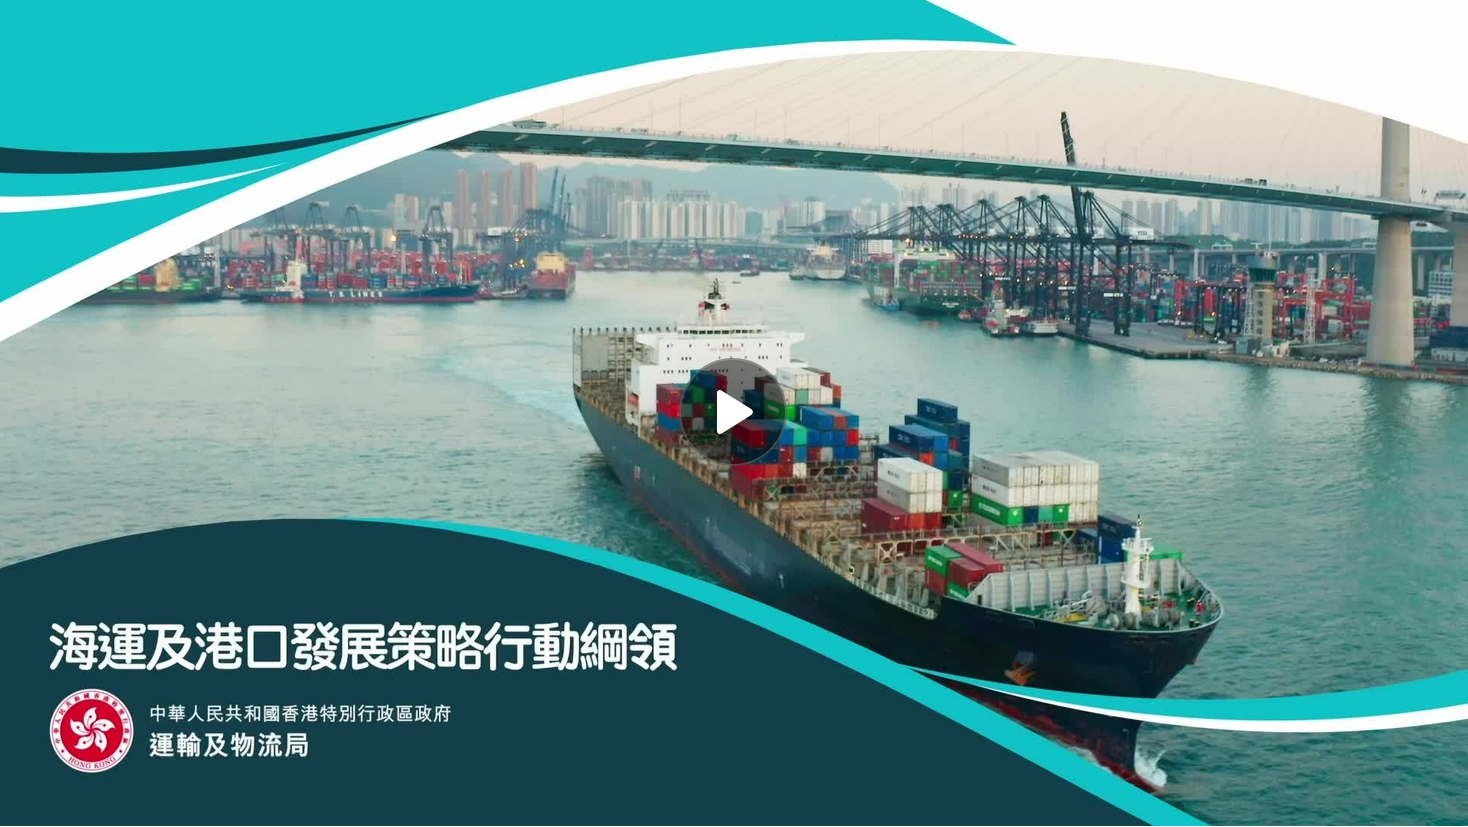 《海運及港口發展策略行動綱領》宣傳片